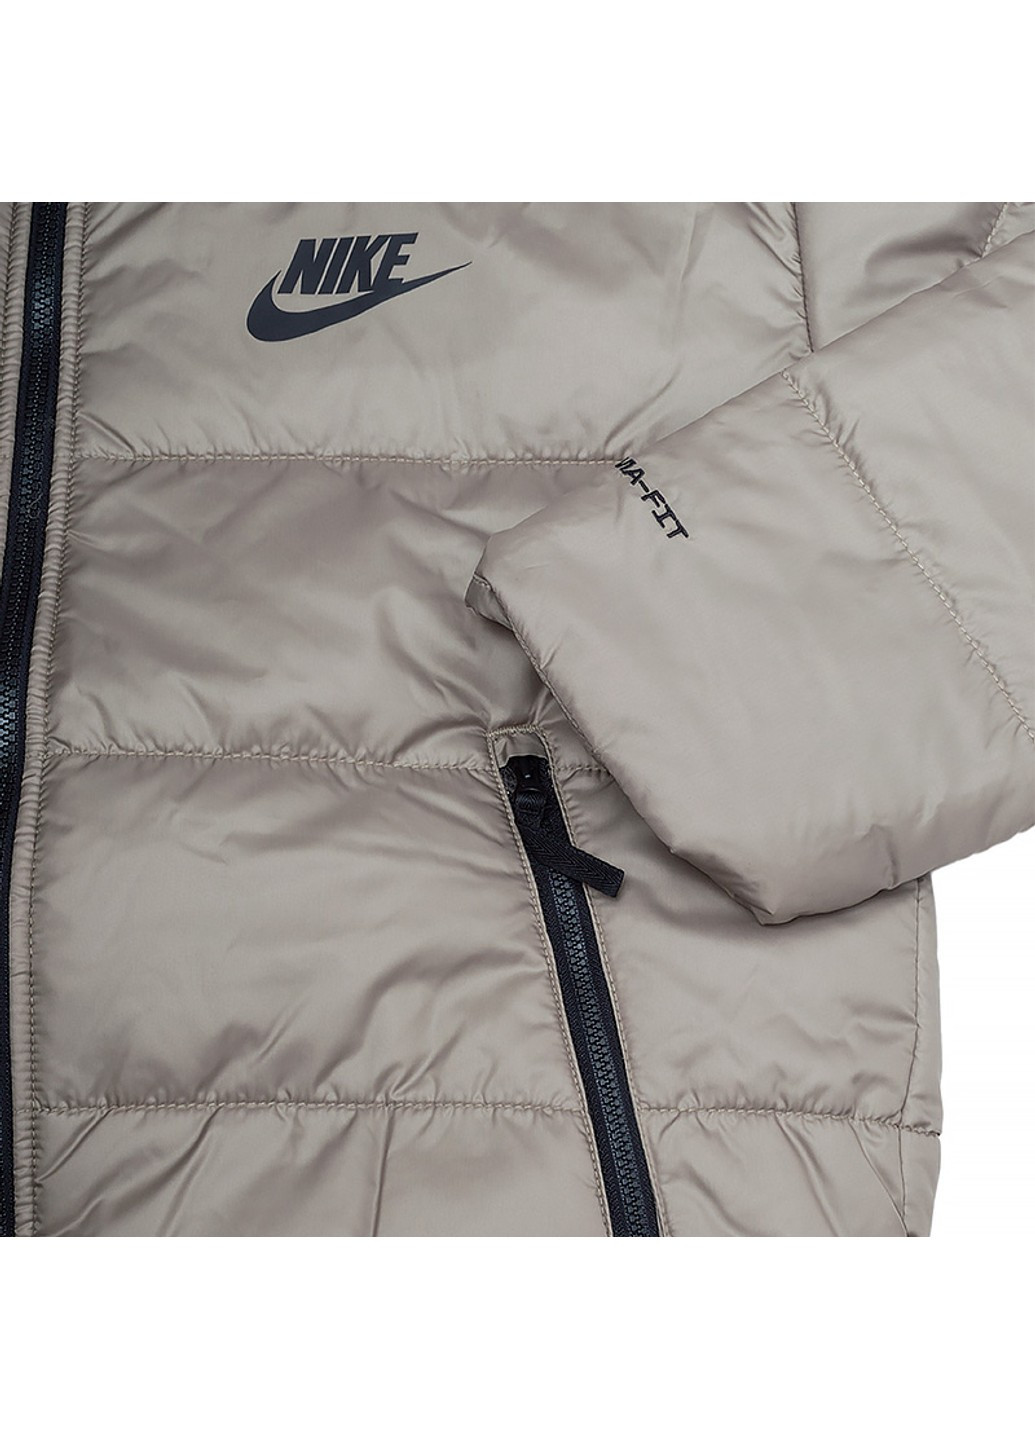 Бежевая зимняя куртка w nsw syn tf rpl hd jkt Nike